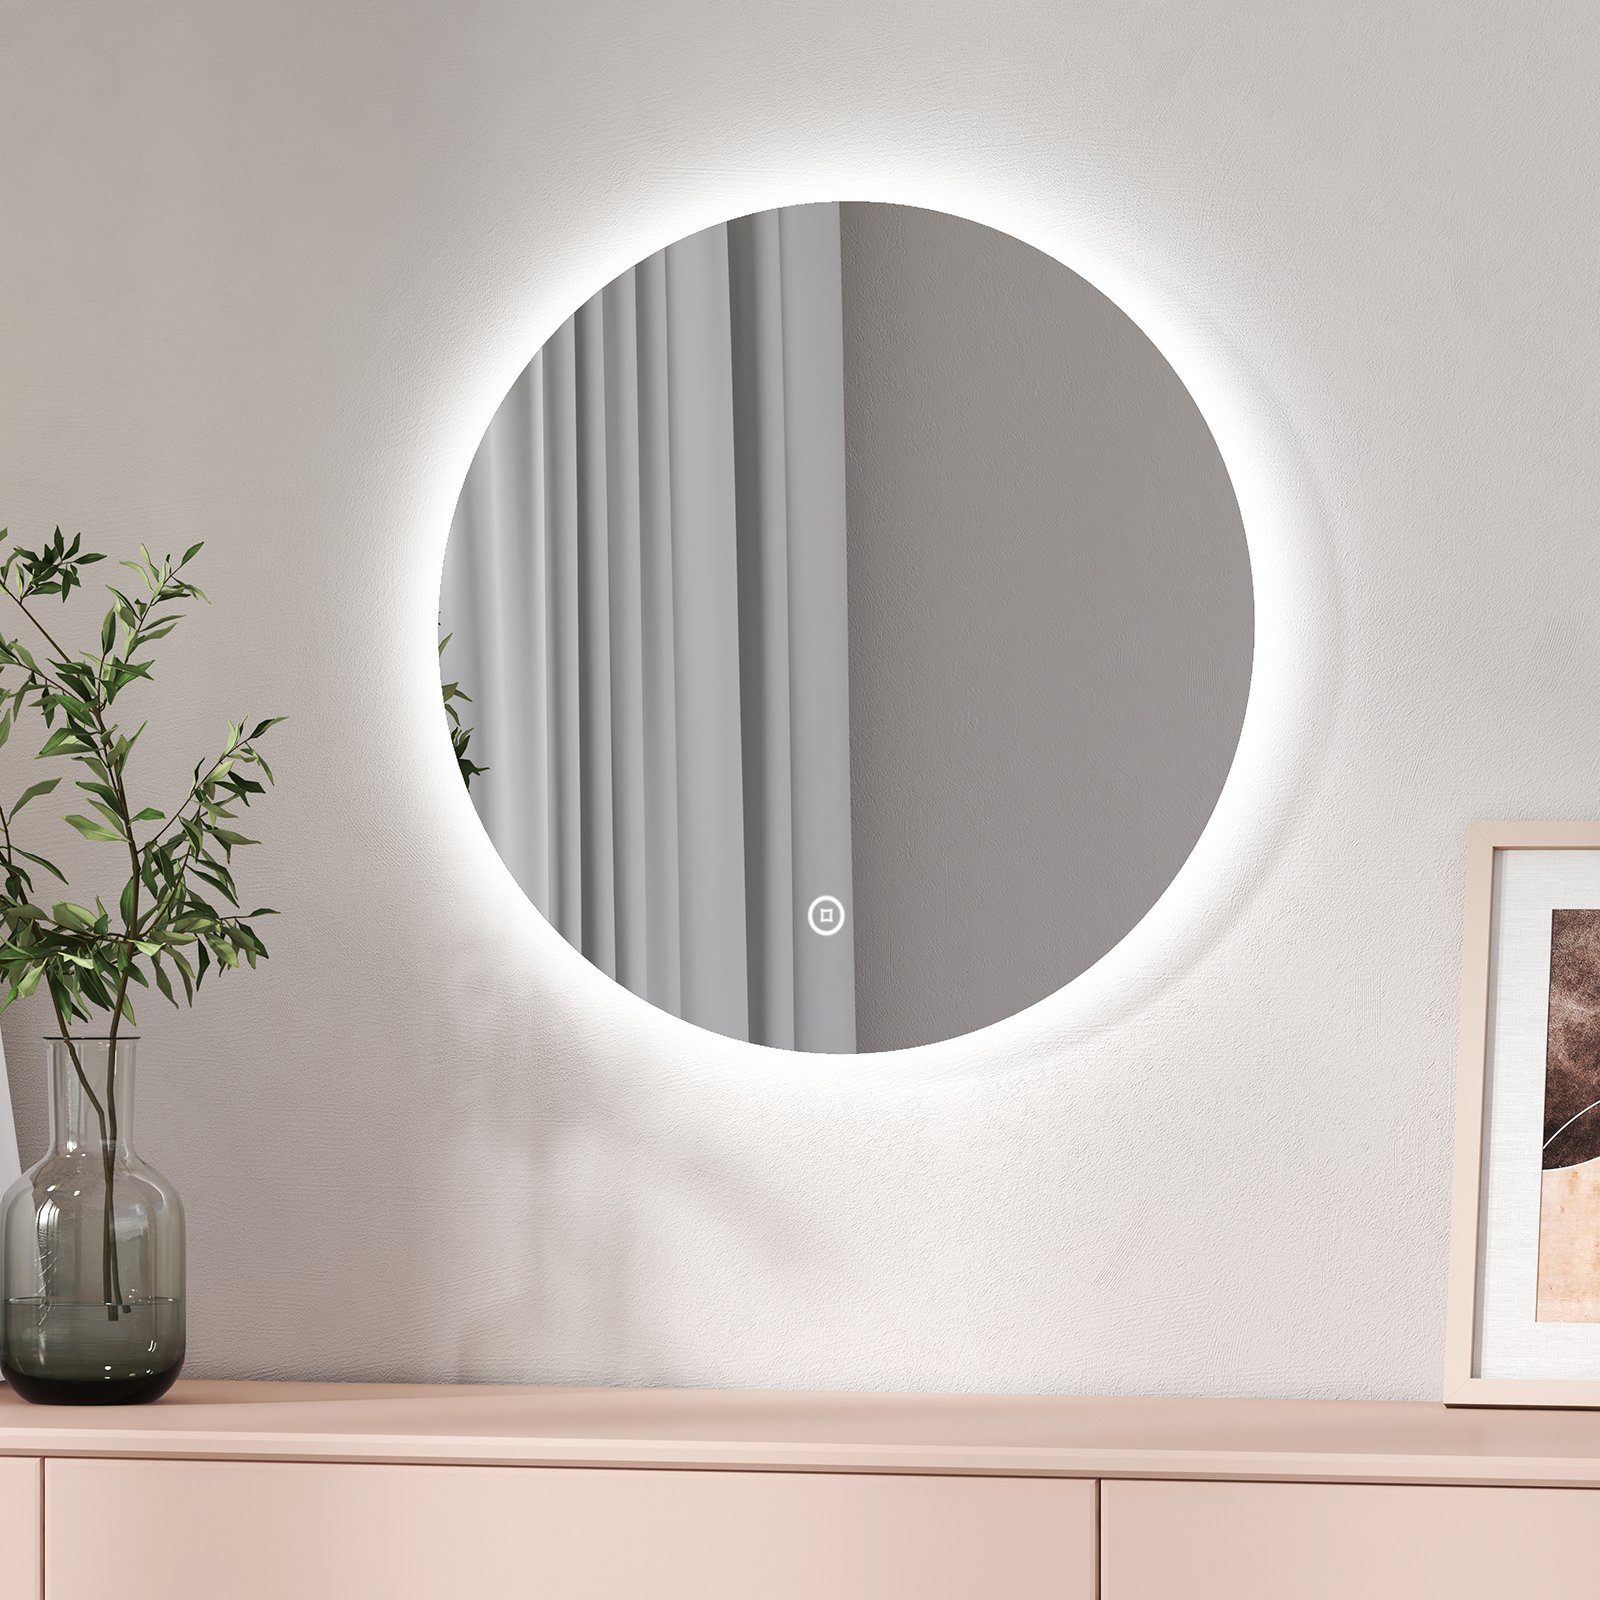 EMKE Badspiegel Badspiegel Rund mit Beleuchtung LED Badezimmerspiegel Wandspiegel, 3 Farben des Lichts, Dimmbar, Intelligenter Touchschalter